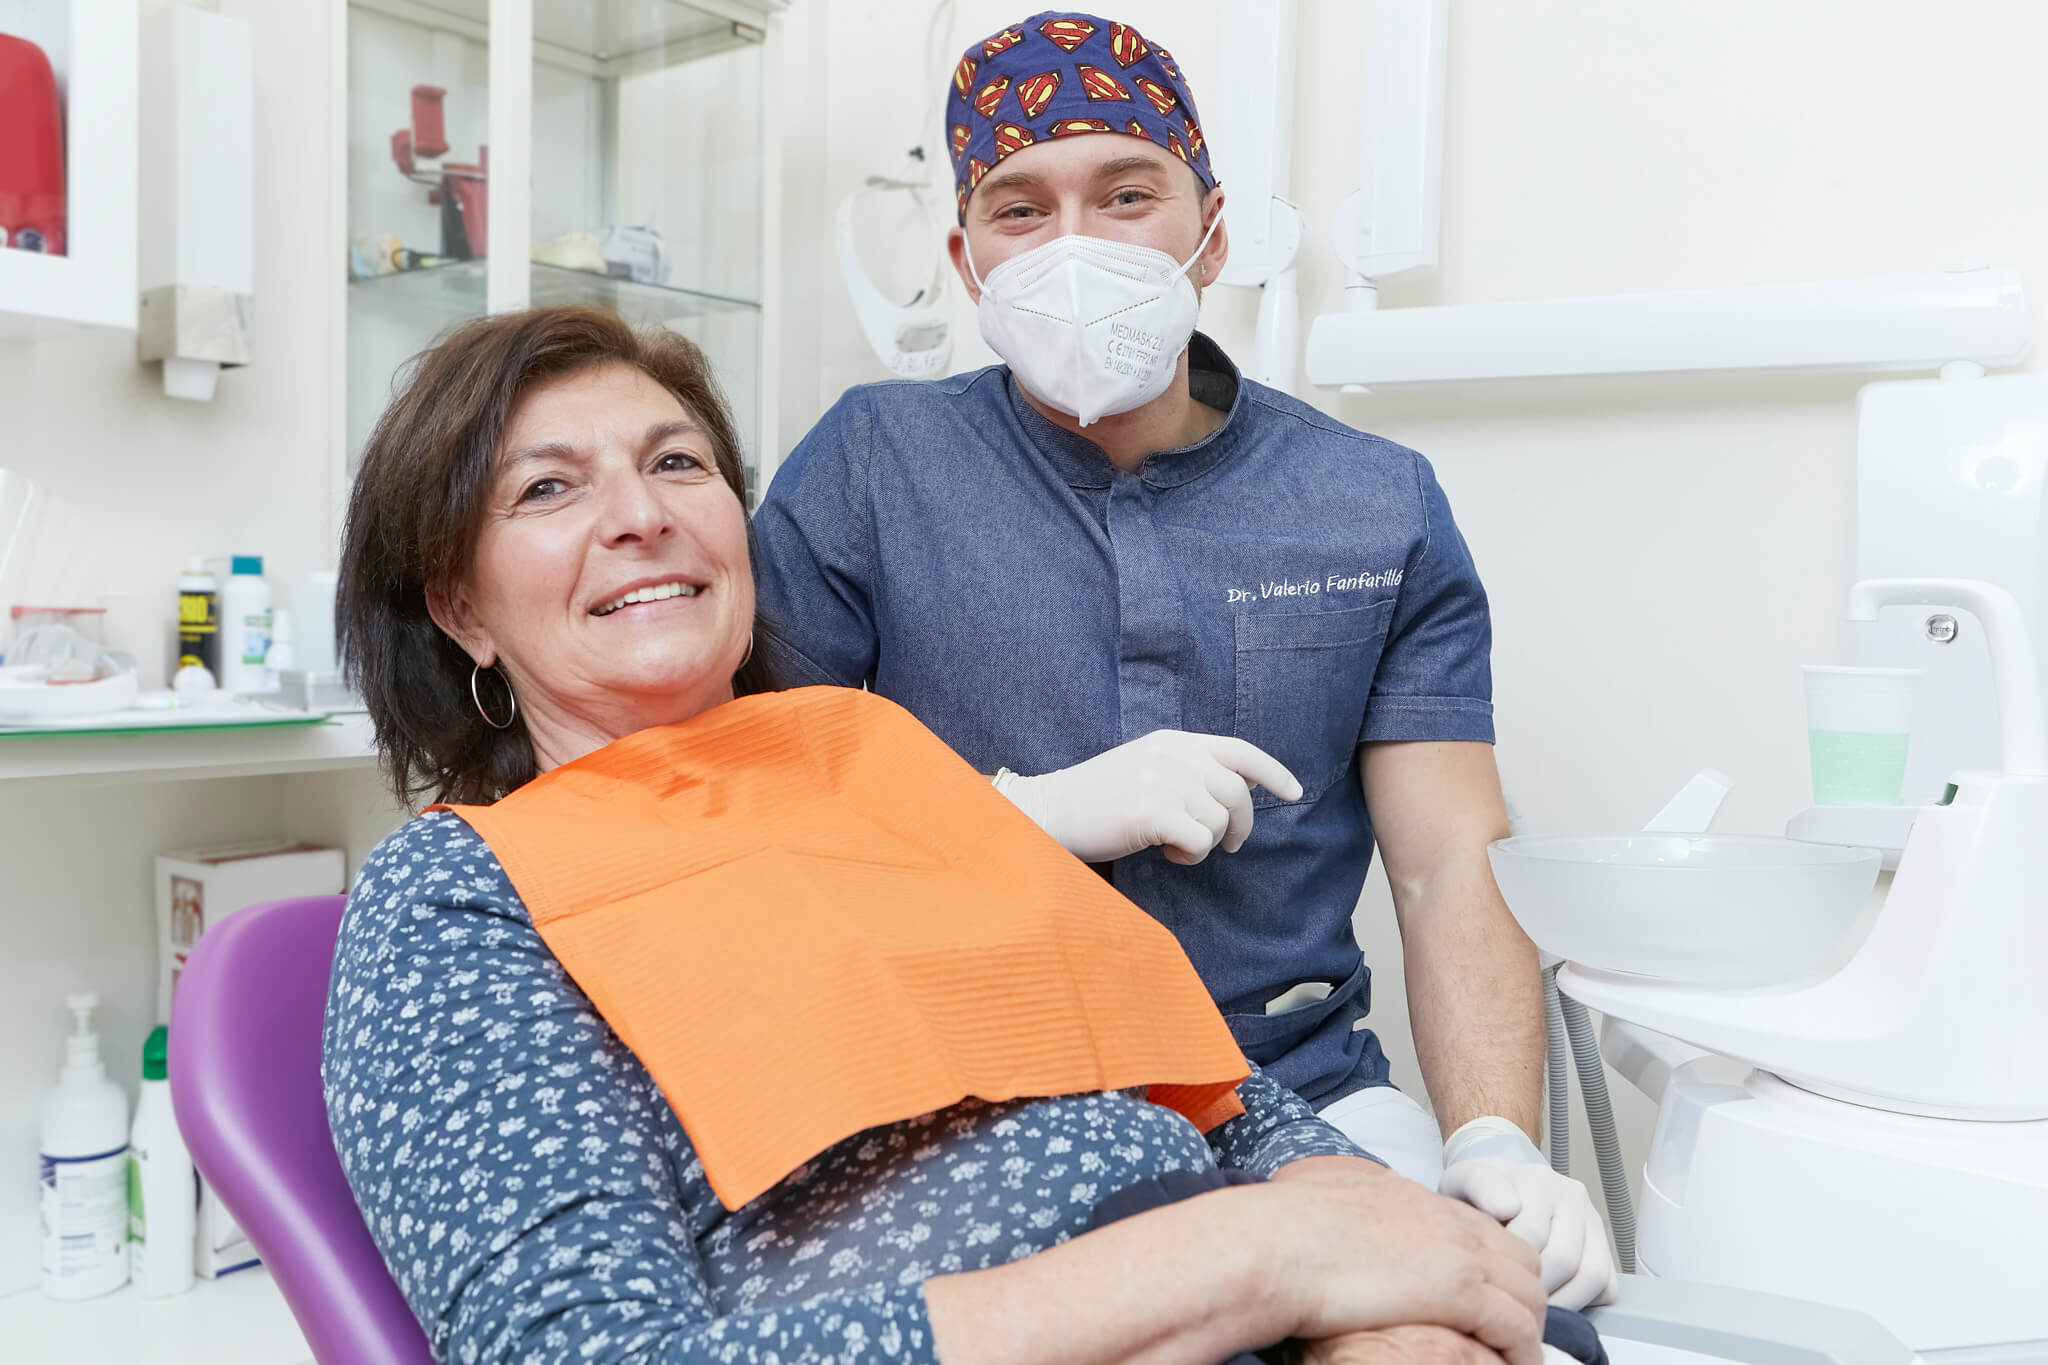 studio dentistico tg dental roma dentista finocchio borghesiana impianti dentali